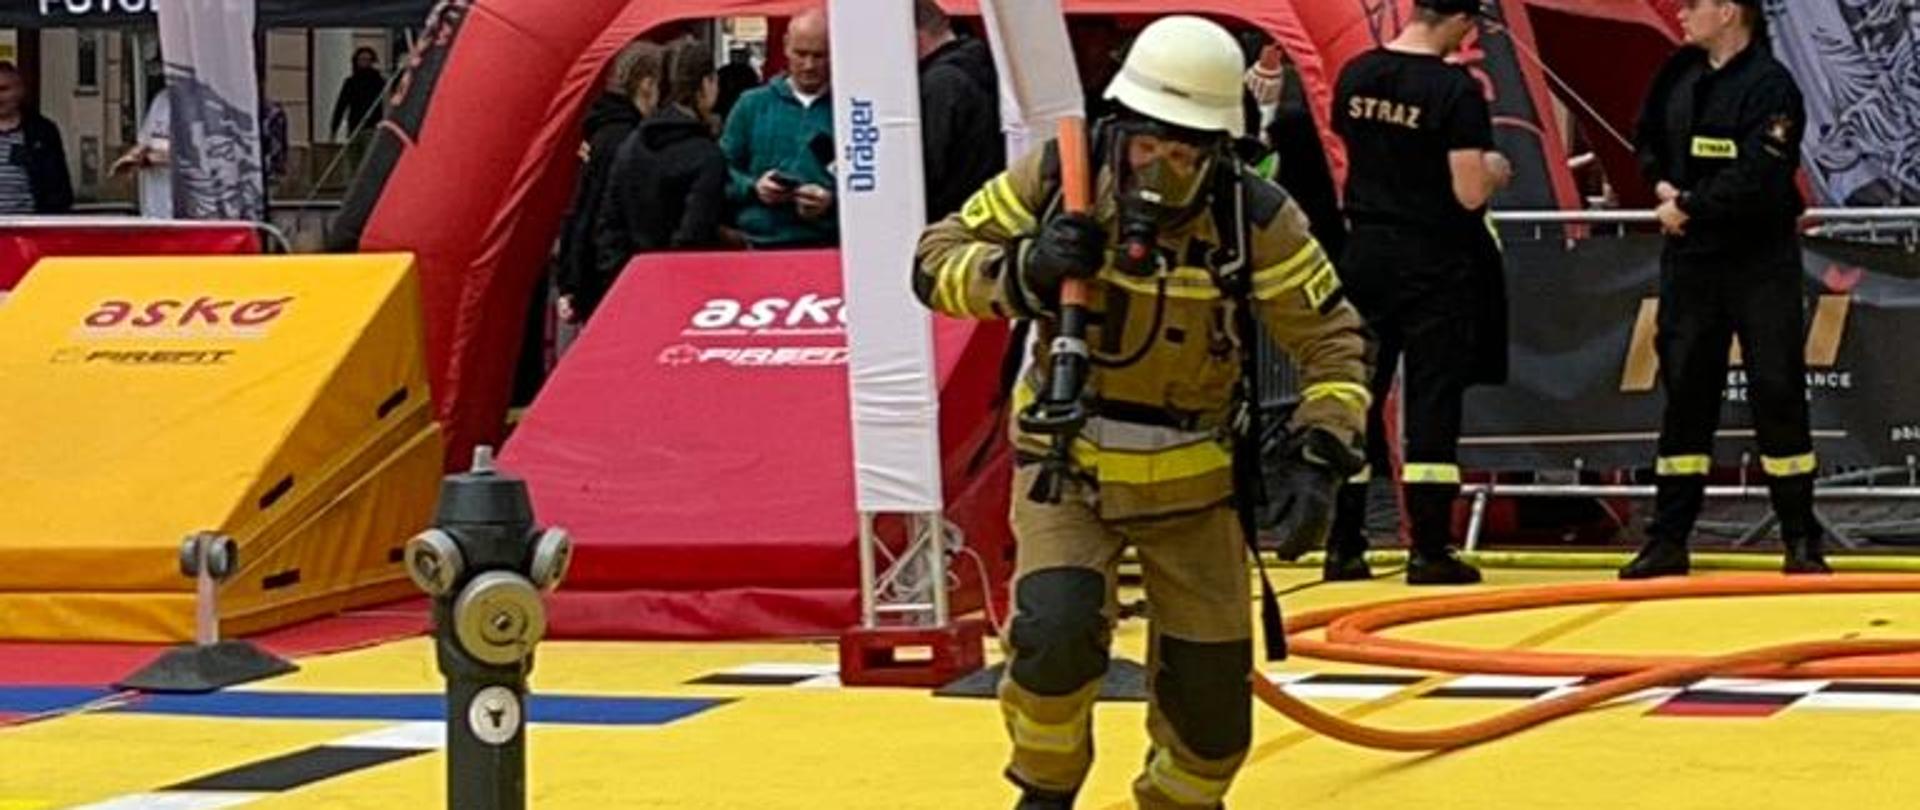 Zdjęcie przedstawia strażaka w piaskowym mundurze, białym hełmie na głowie, który biegnie po żółtej utwardzonej nawierzchni ciągnąc za sobą wąż strażacki. W tle czerwono-czarny namiot, fasady budynków oraz inni ludzie.